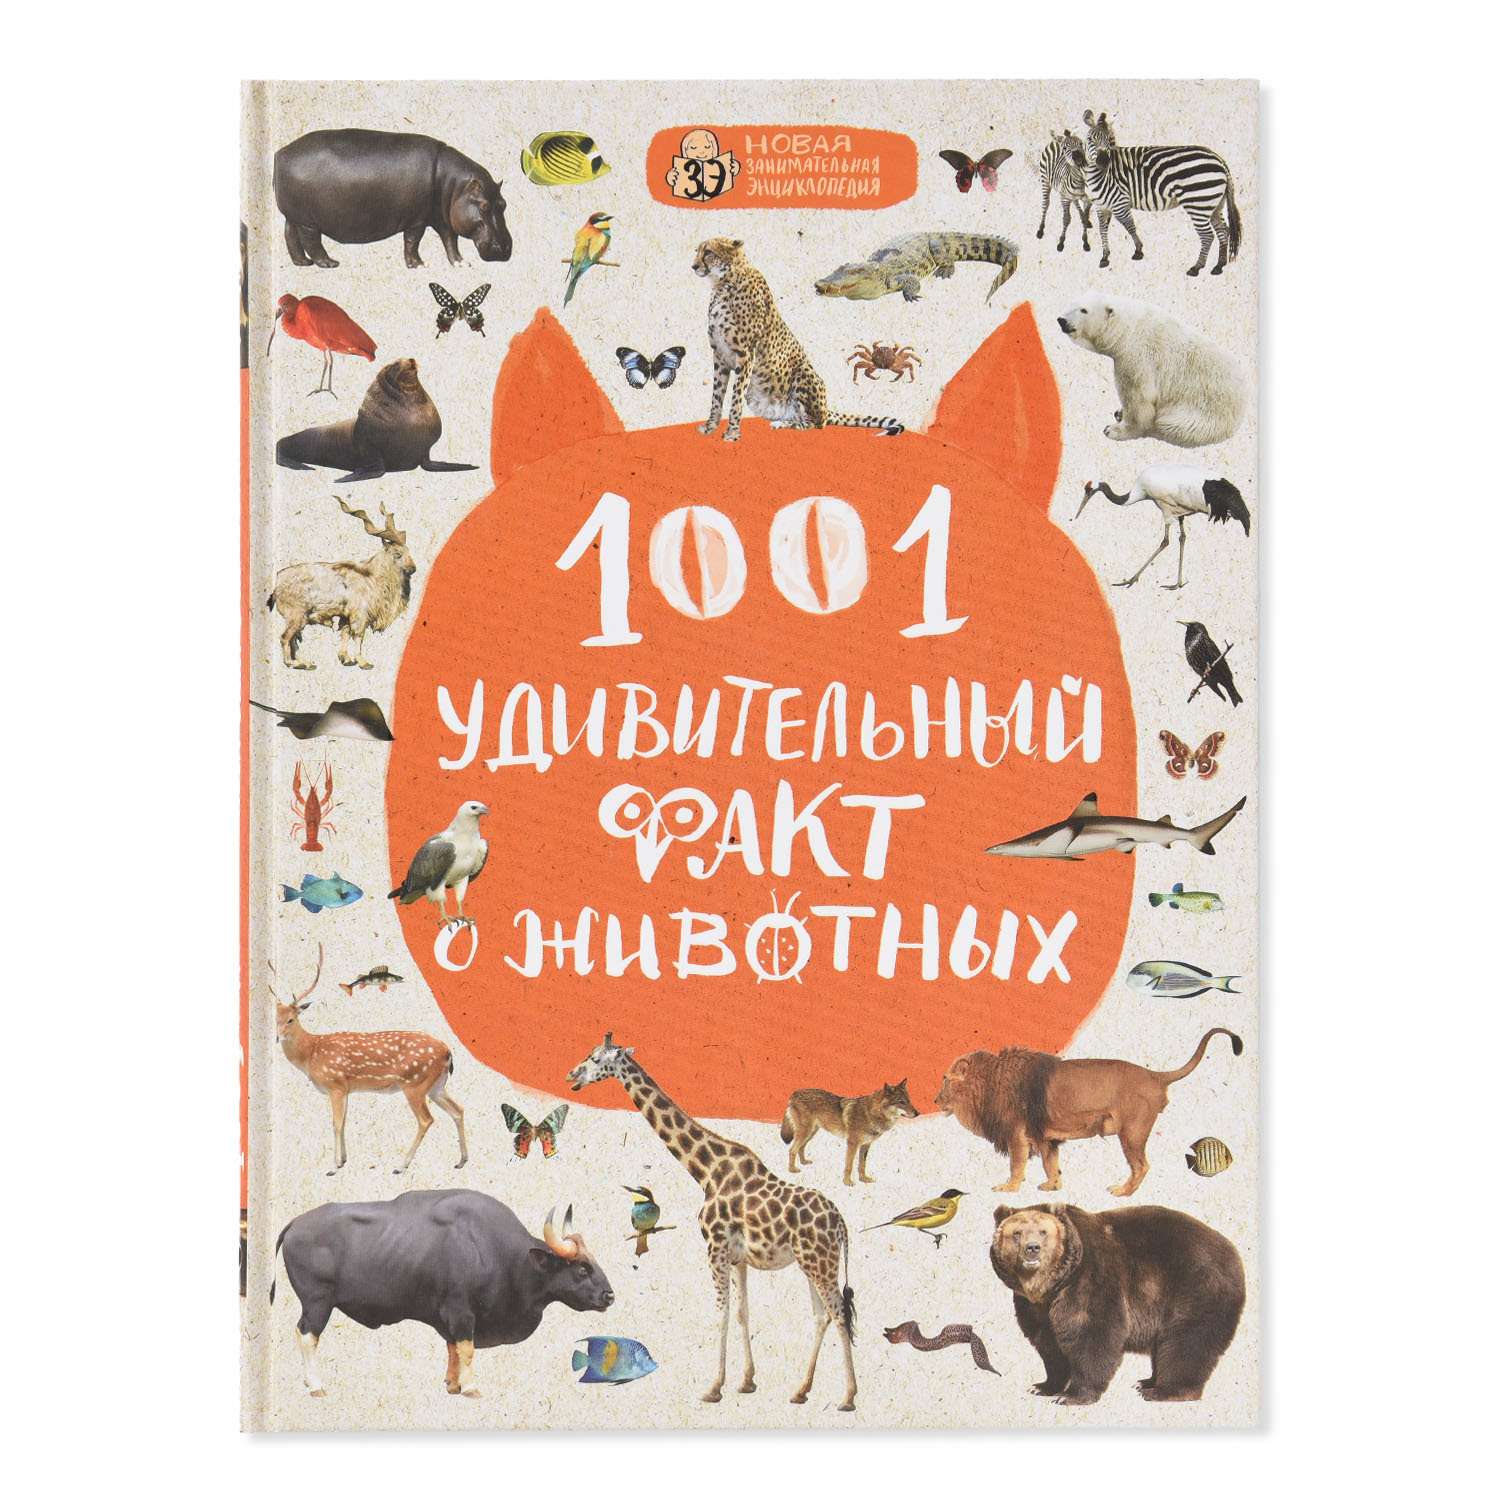 Книга Эксмо 1001 удивительный факт о животных - фото 1